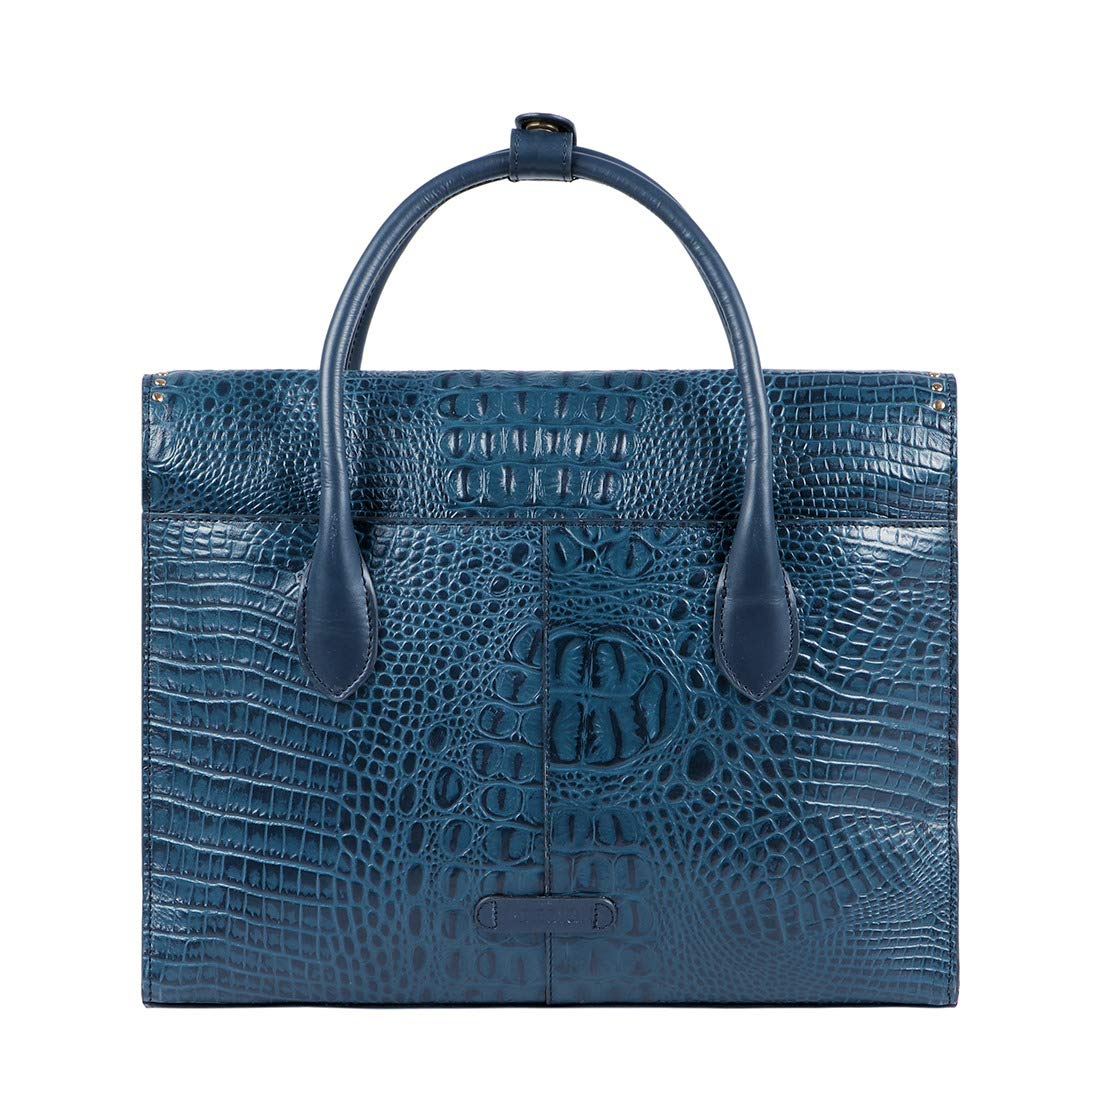 Hidesign Women's Shoulder Bag (Blue)